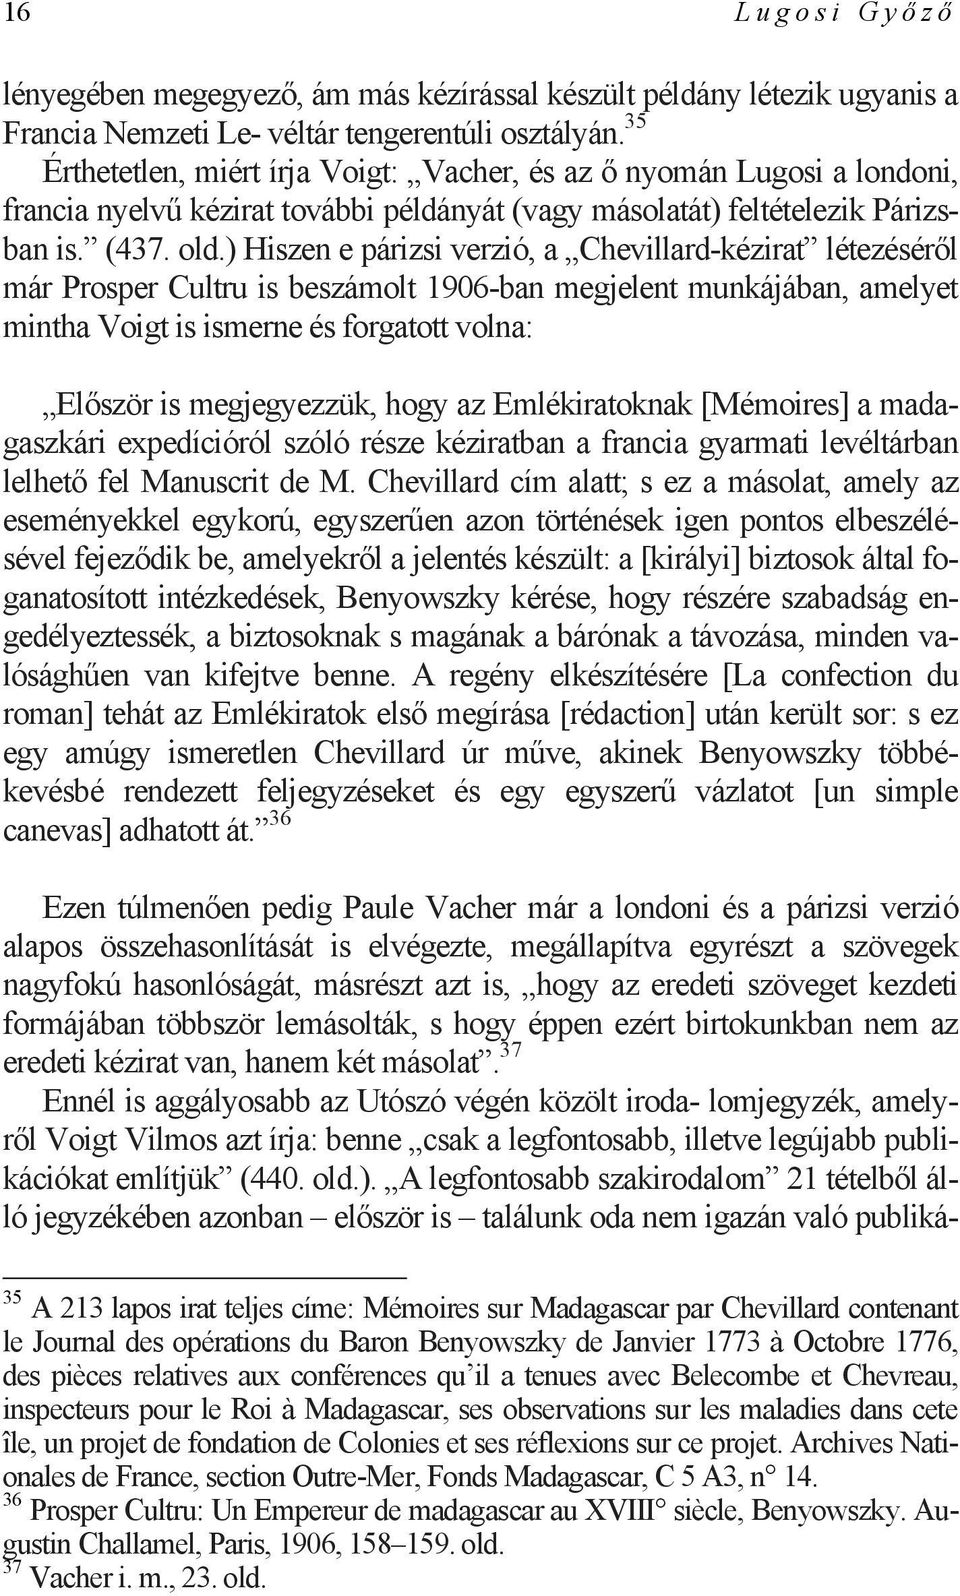 ) Hiszen e párizsi verzió, a Chevillard-kézirat létezéséről már Prosper Cultru is beszámolt 1906-ban megjelent munkájában, amelyet mintha Voigt is ismerne és forgatott volna: Először is megjegyezzük,